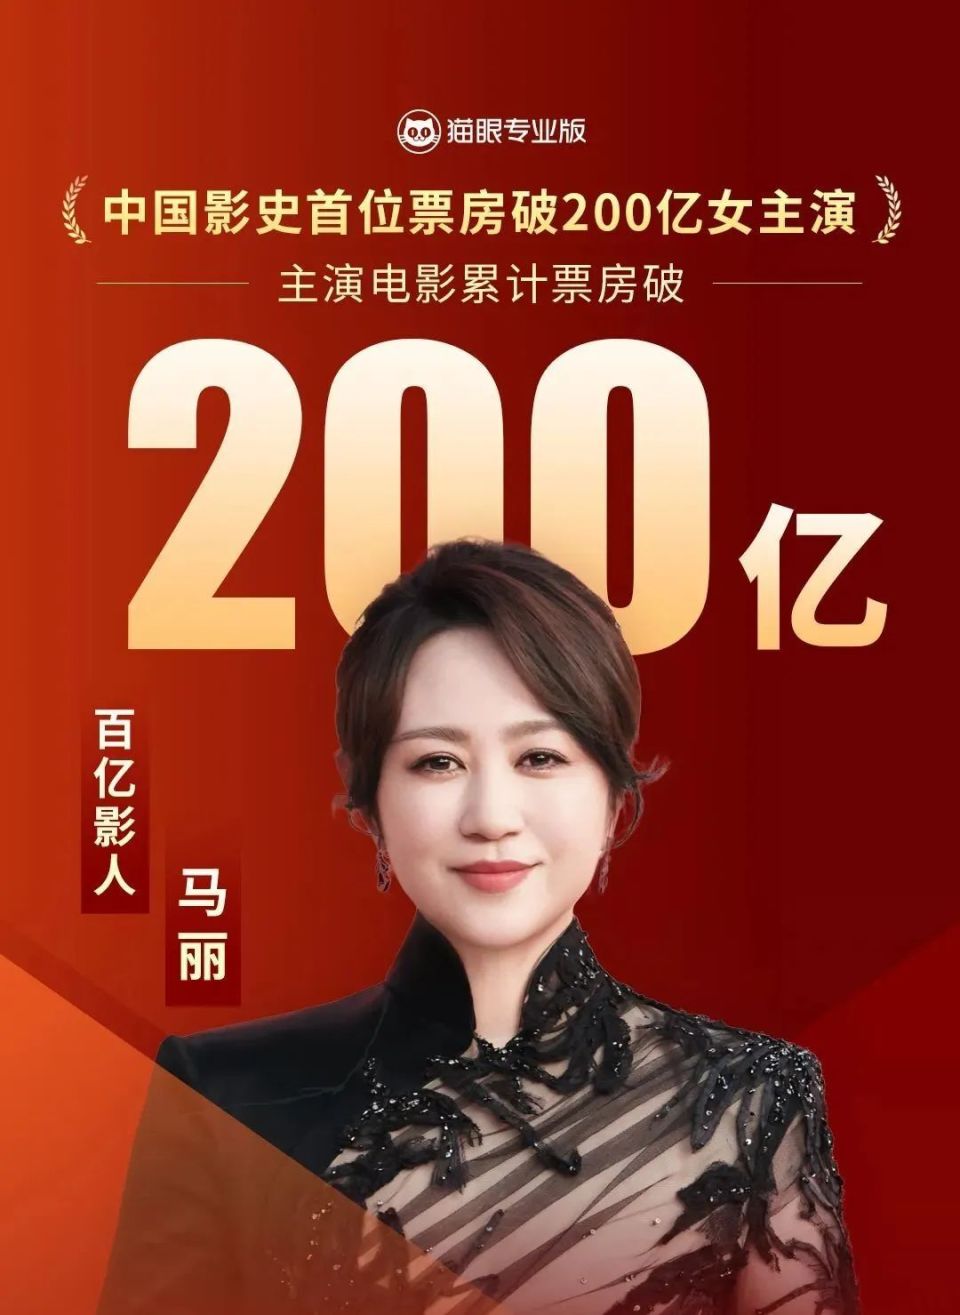 演员马丽,成中国影史首位票房破200亿女演员